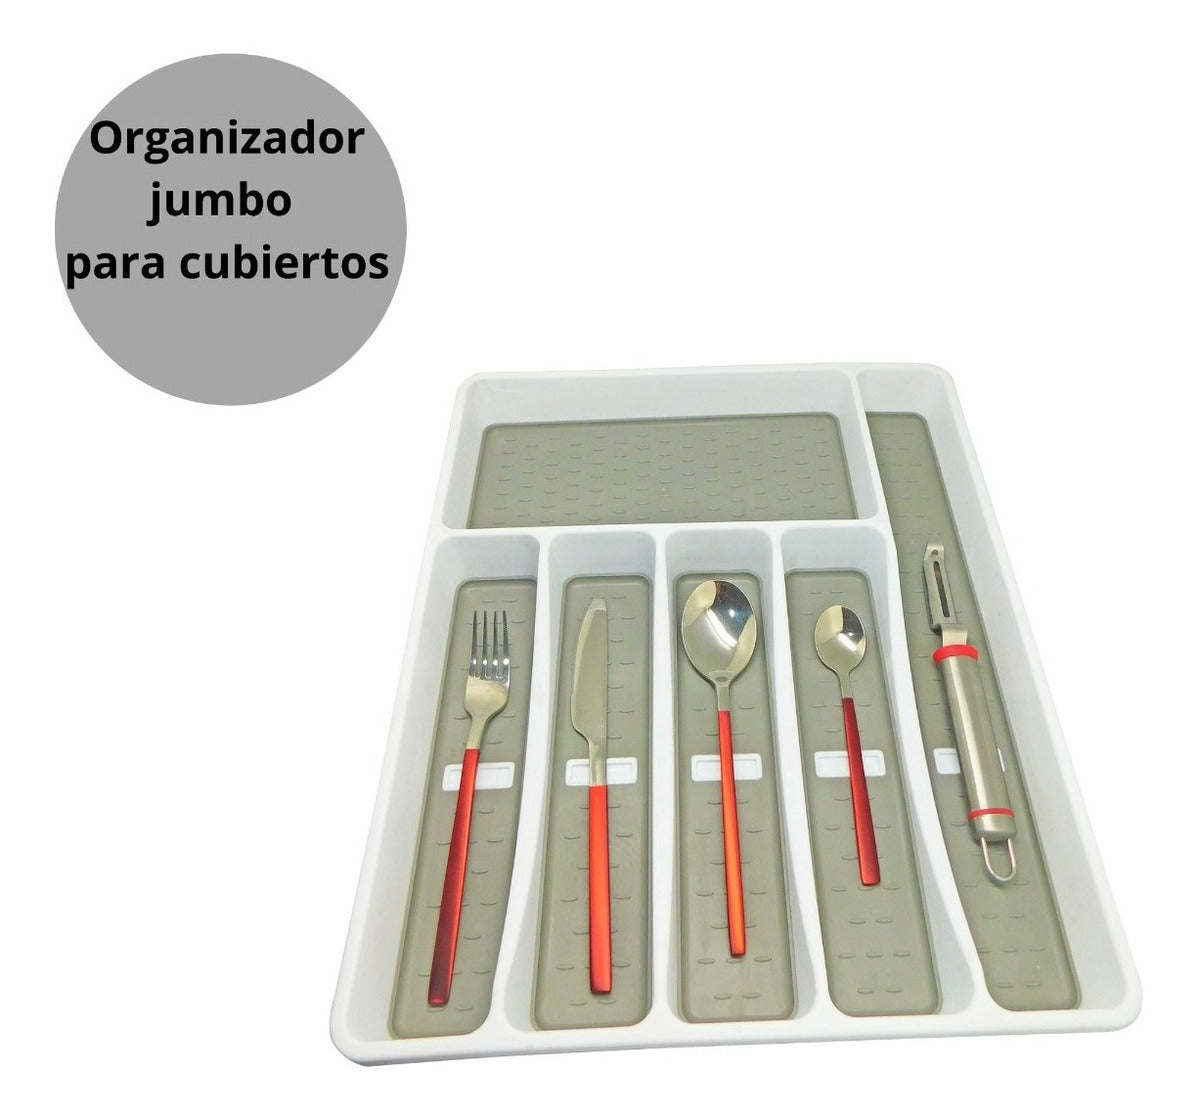 Good & Good, Organizador Jumbo Para Cubiertos